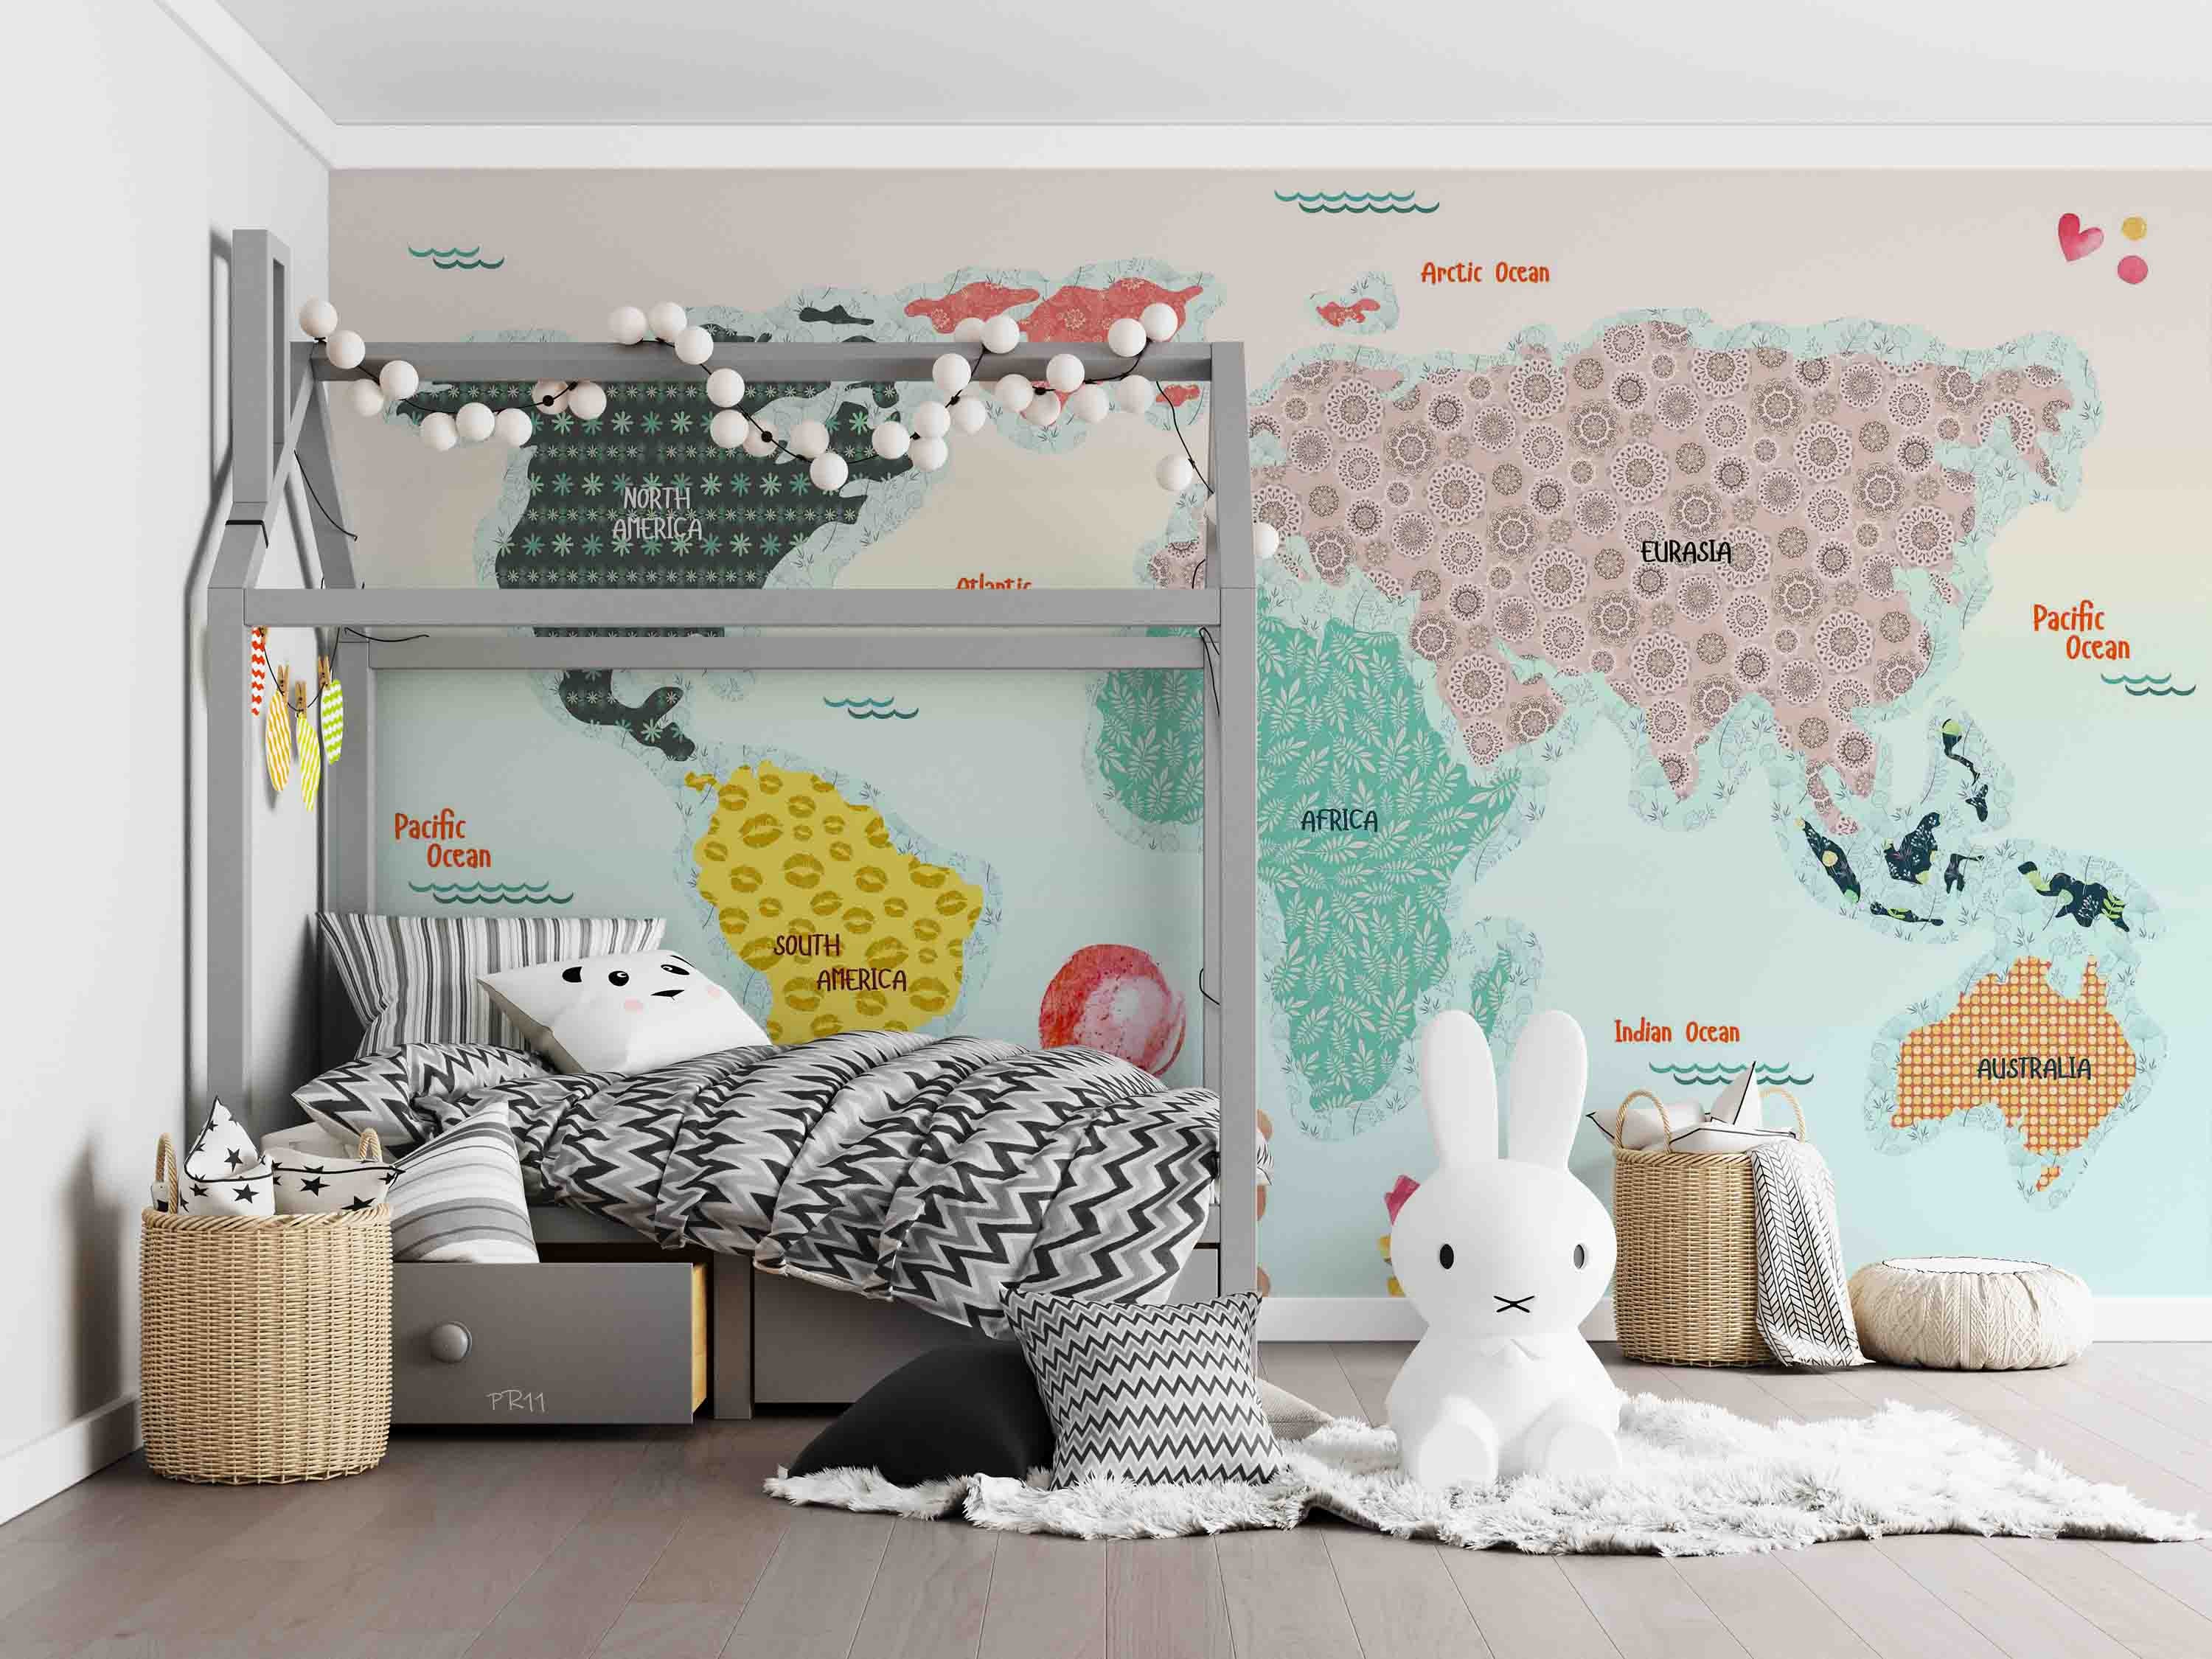 3D Cartoon Colorful World Map Wall Mural Wallpaper GD 4897- Jess Art Decoration